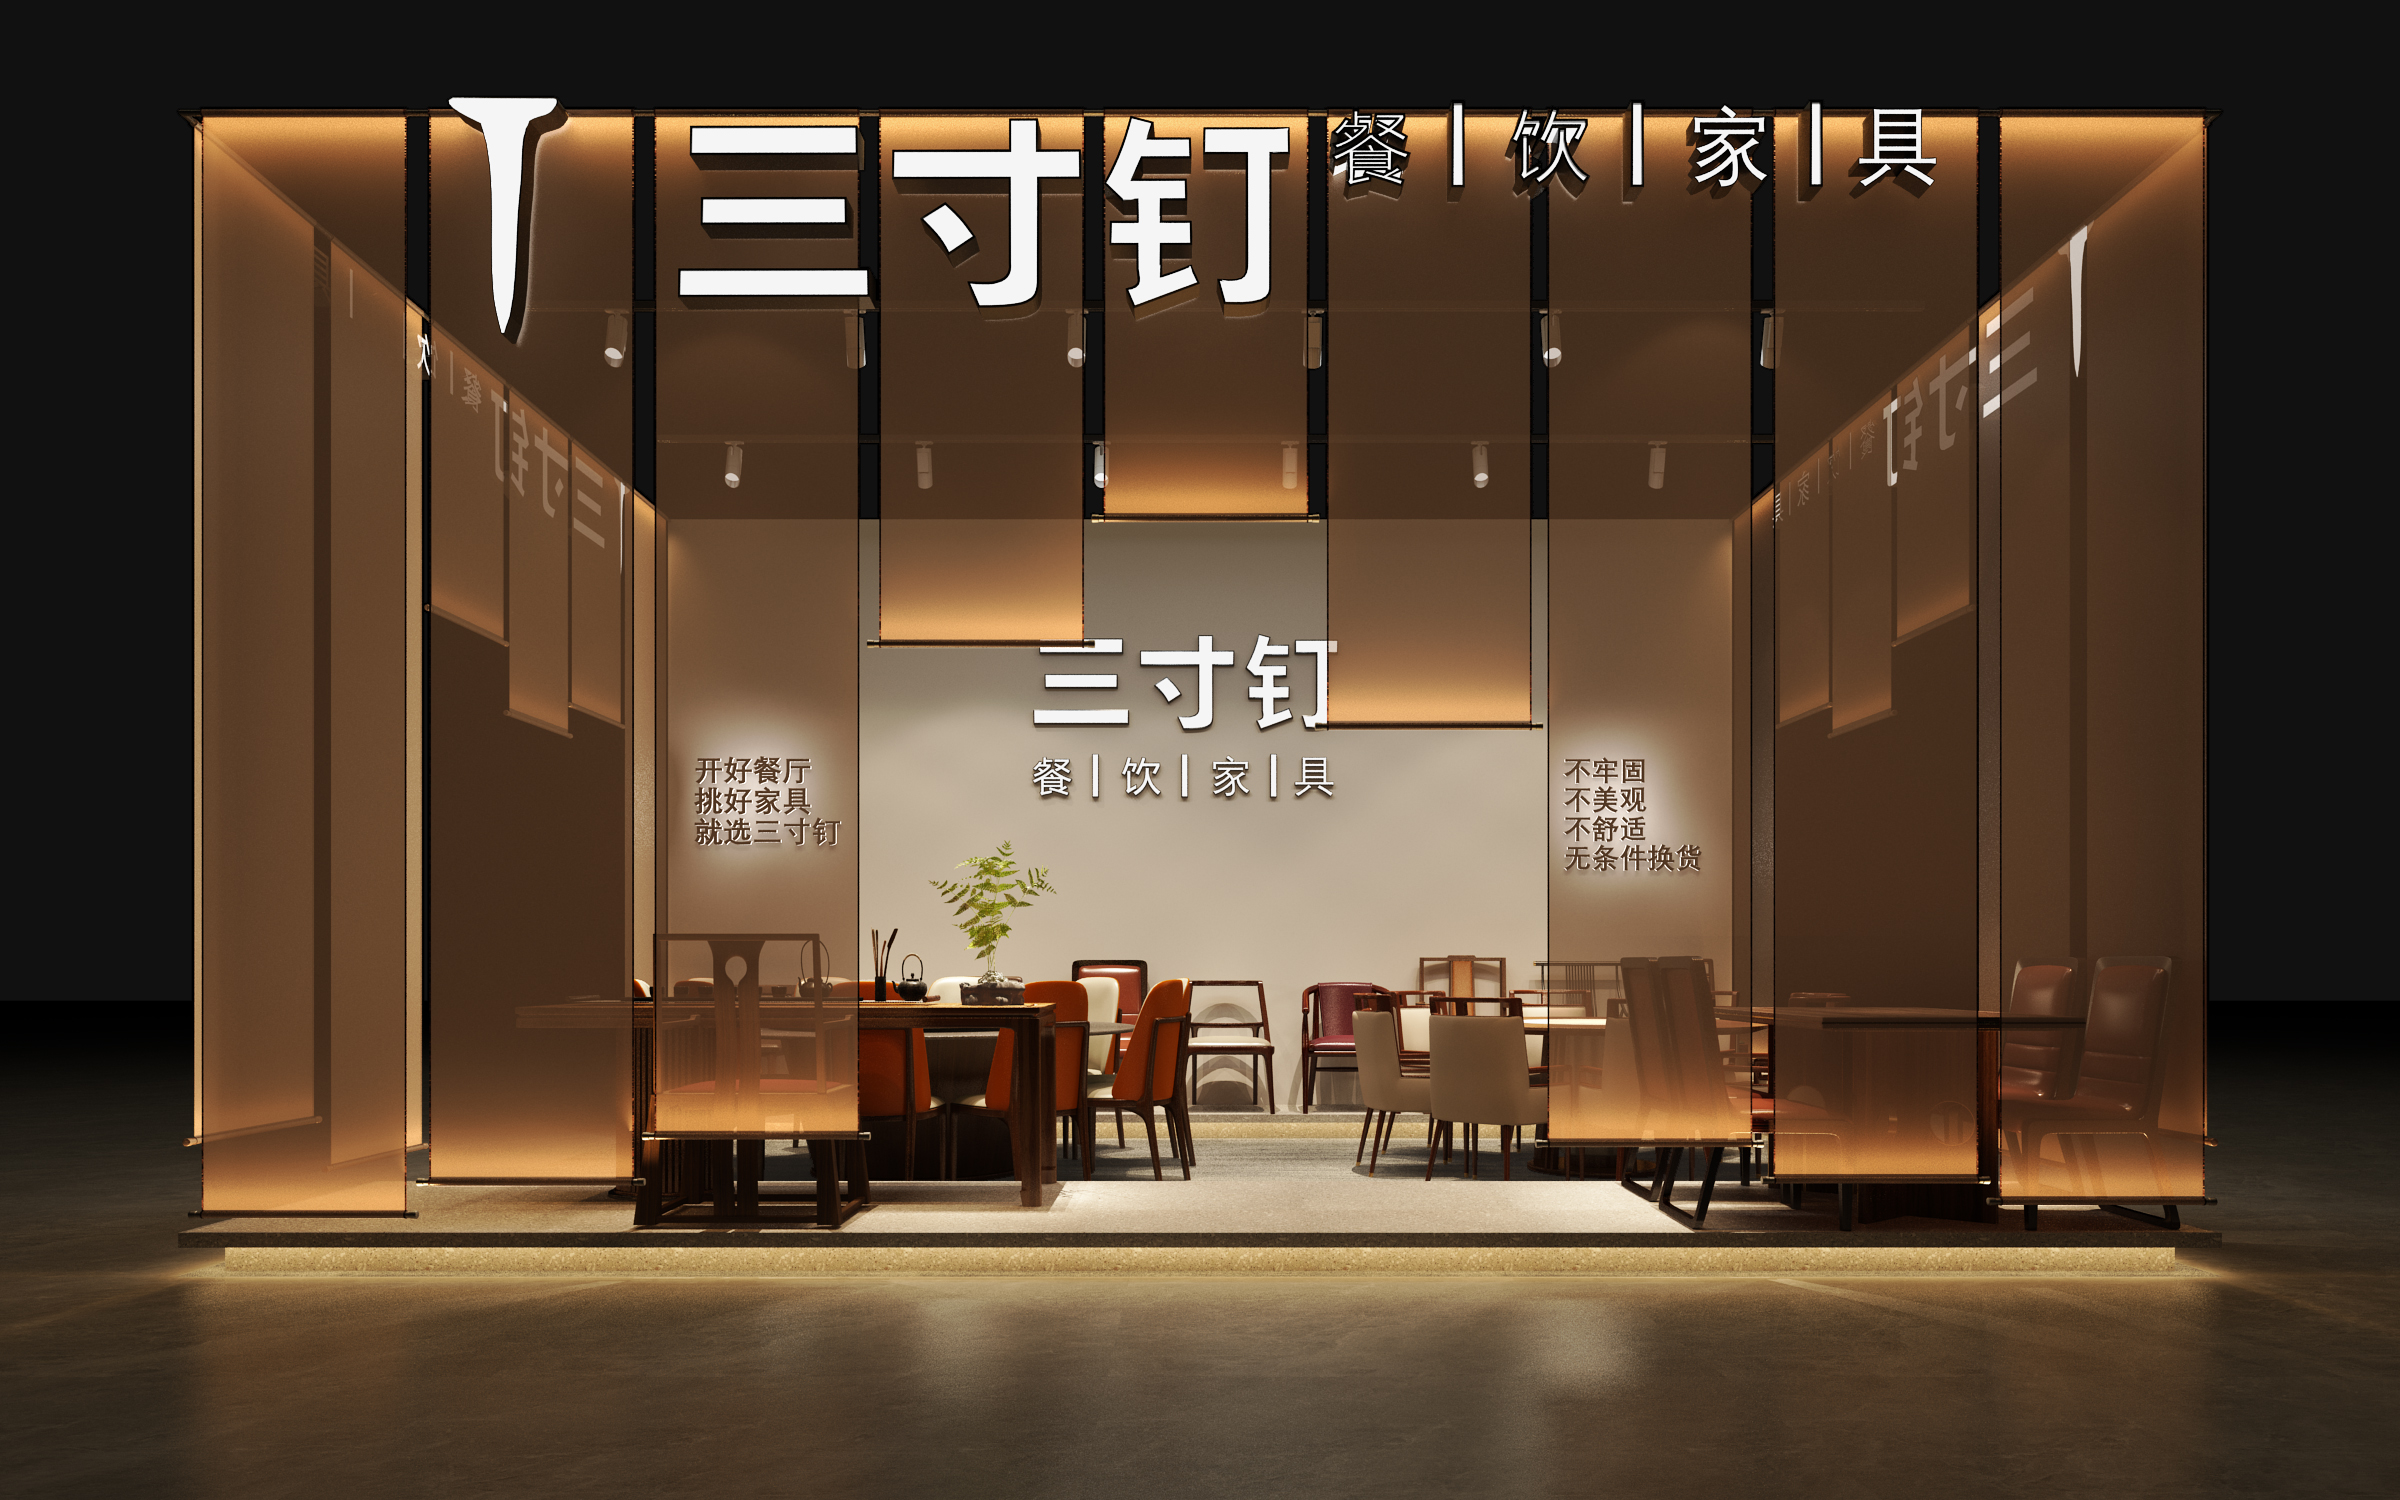 【特装欣赏合集一】 第14届歌华食材展将于8月23-25日亮相上海新国际博览中心(图38)